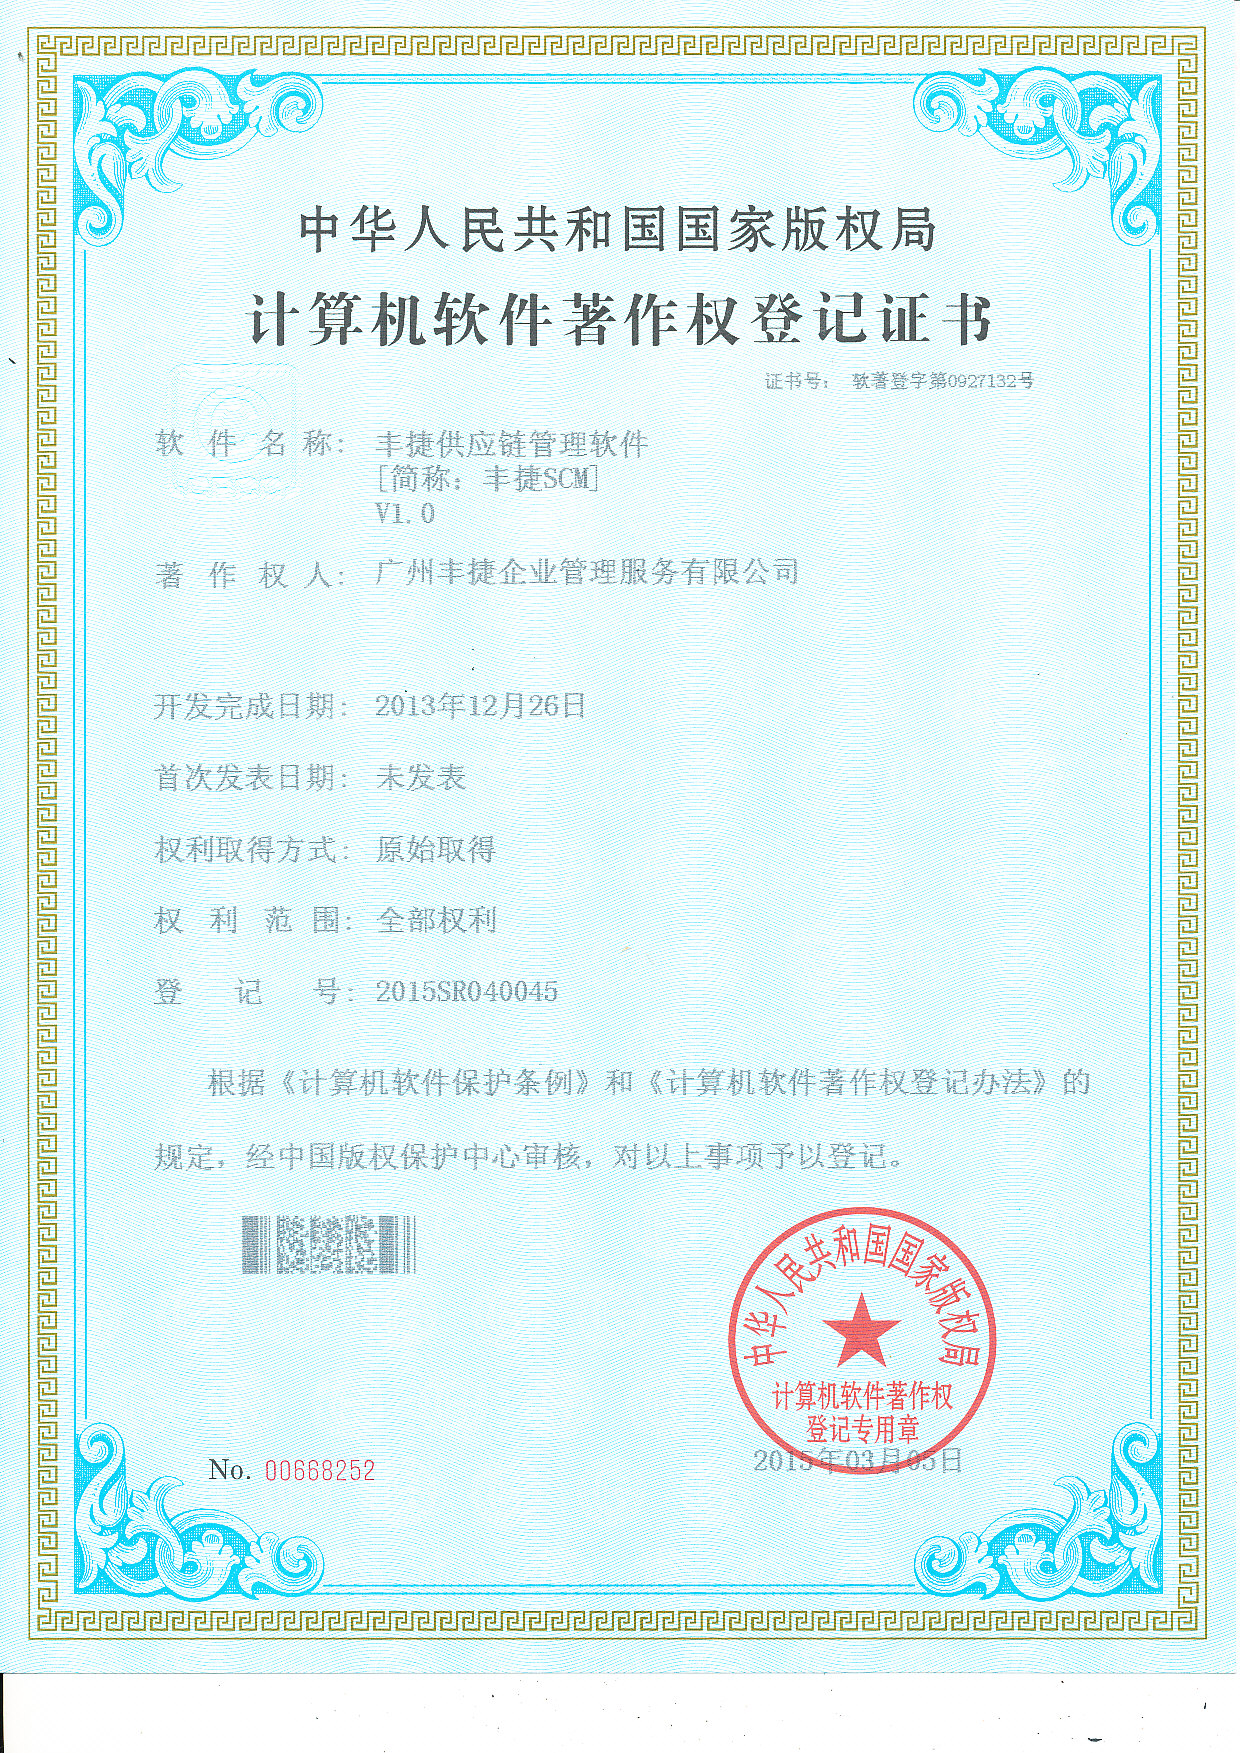 丰捷SCM供应链管理软件著作权登记证书